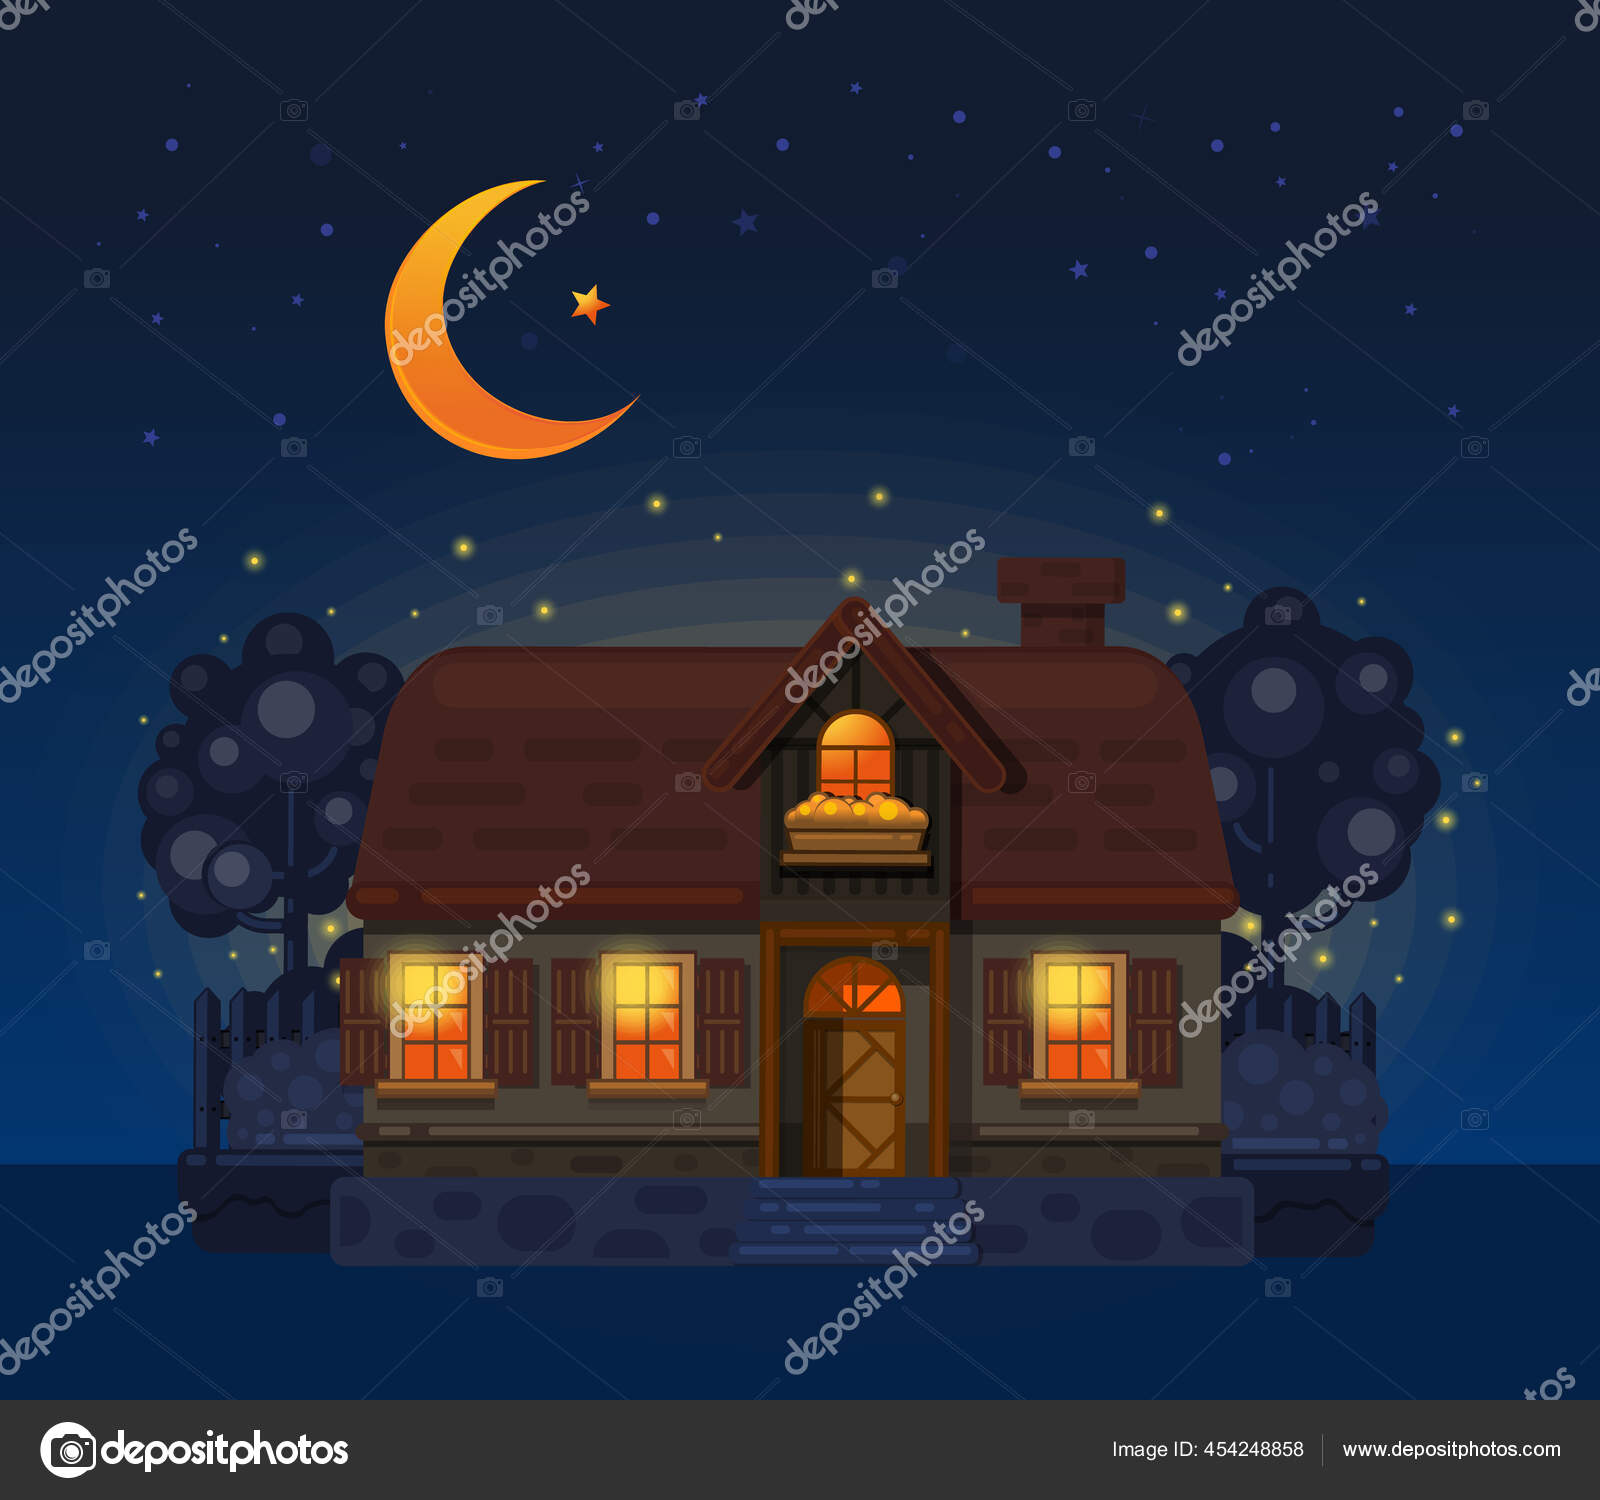 Rumah Desa Pada Malam Hari Rumah Desa Digambar Dengan Gaya Stok Vektor Kiberstalker 454248858